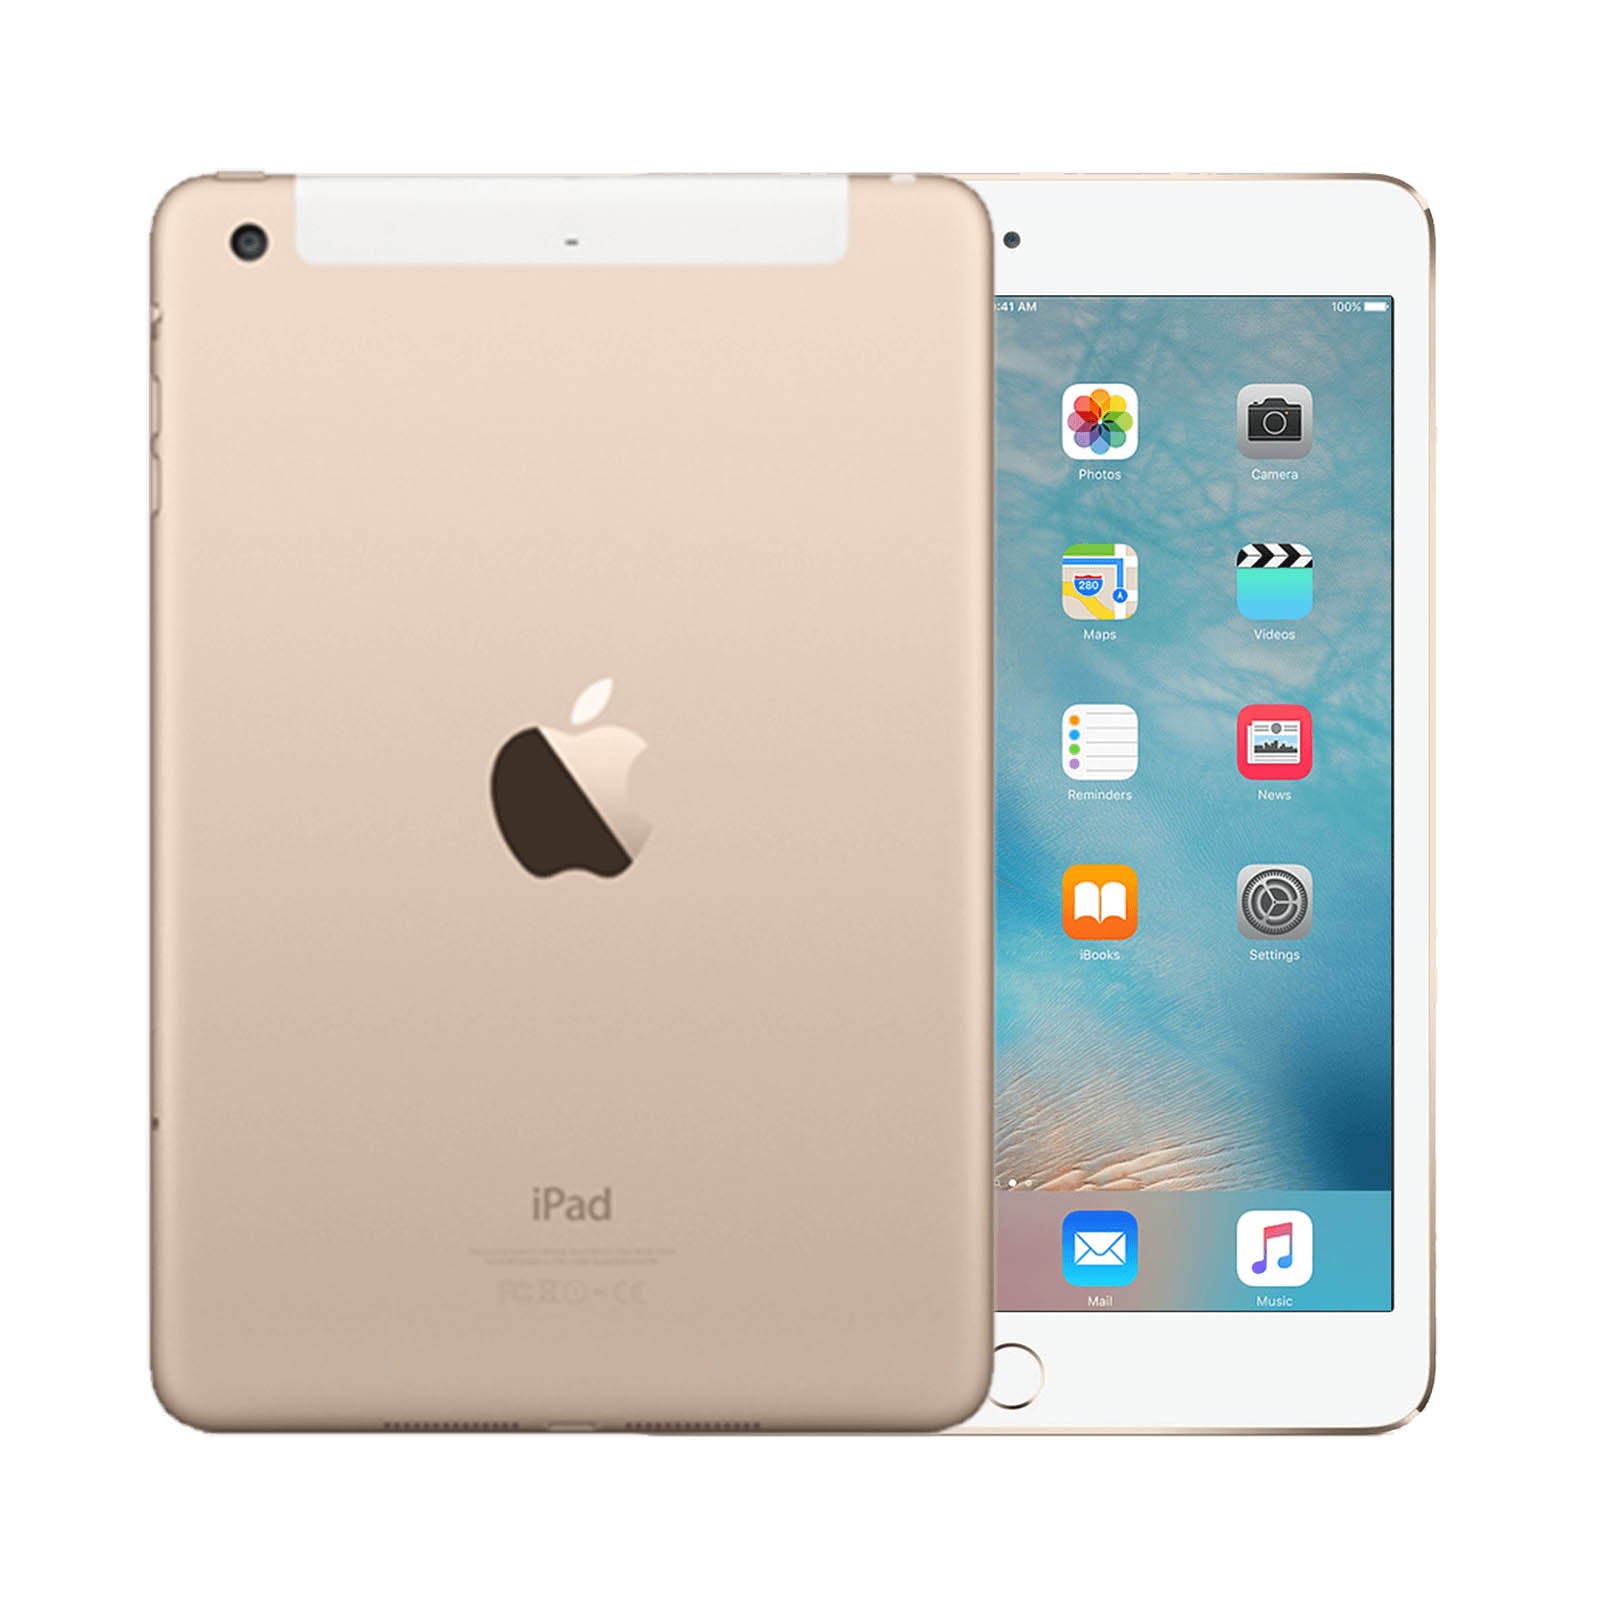 Apple iPad Mini 3 64GB GPS + Celular Desbloqueado Oro - Razonable